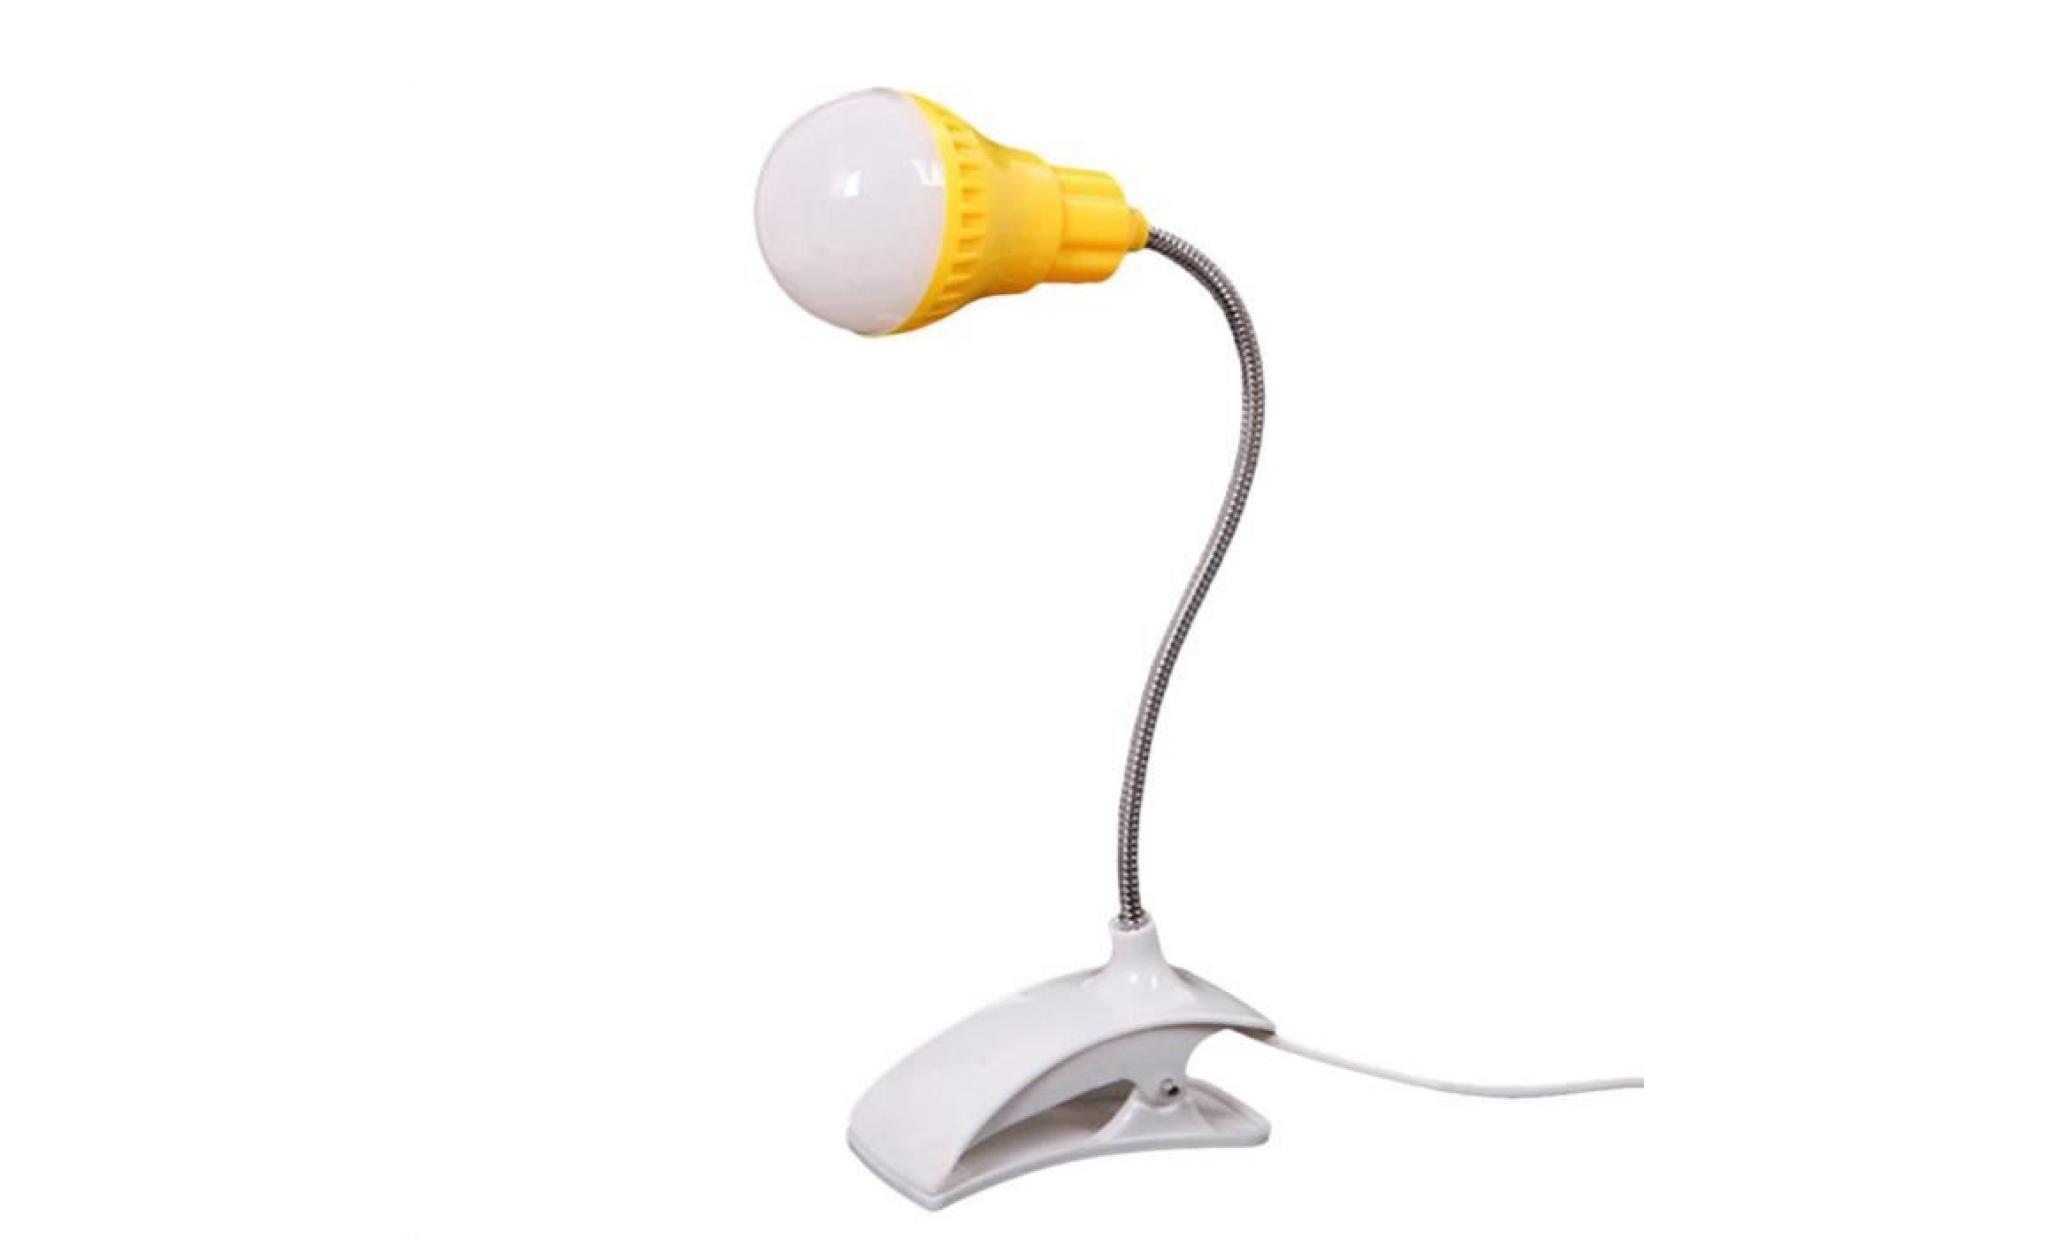 nouveau support de table lampe usb du personnel étudiant de lecture table bureau lampe gn@zoozipo1784 pas cher